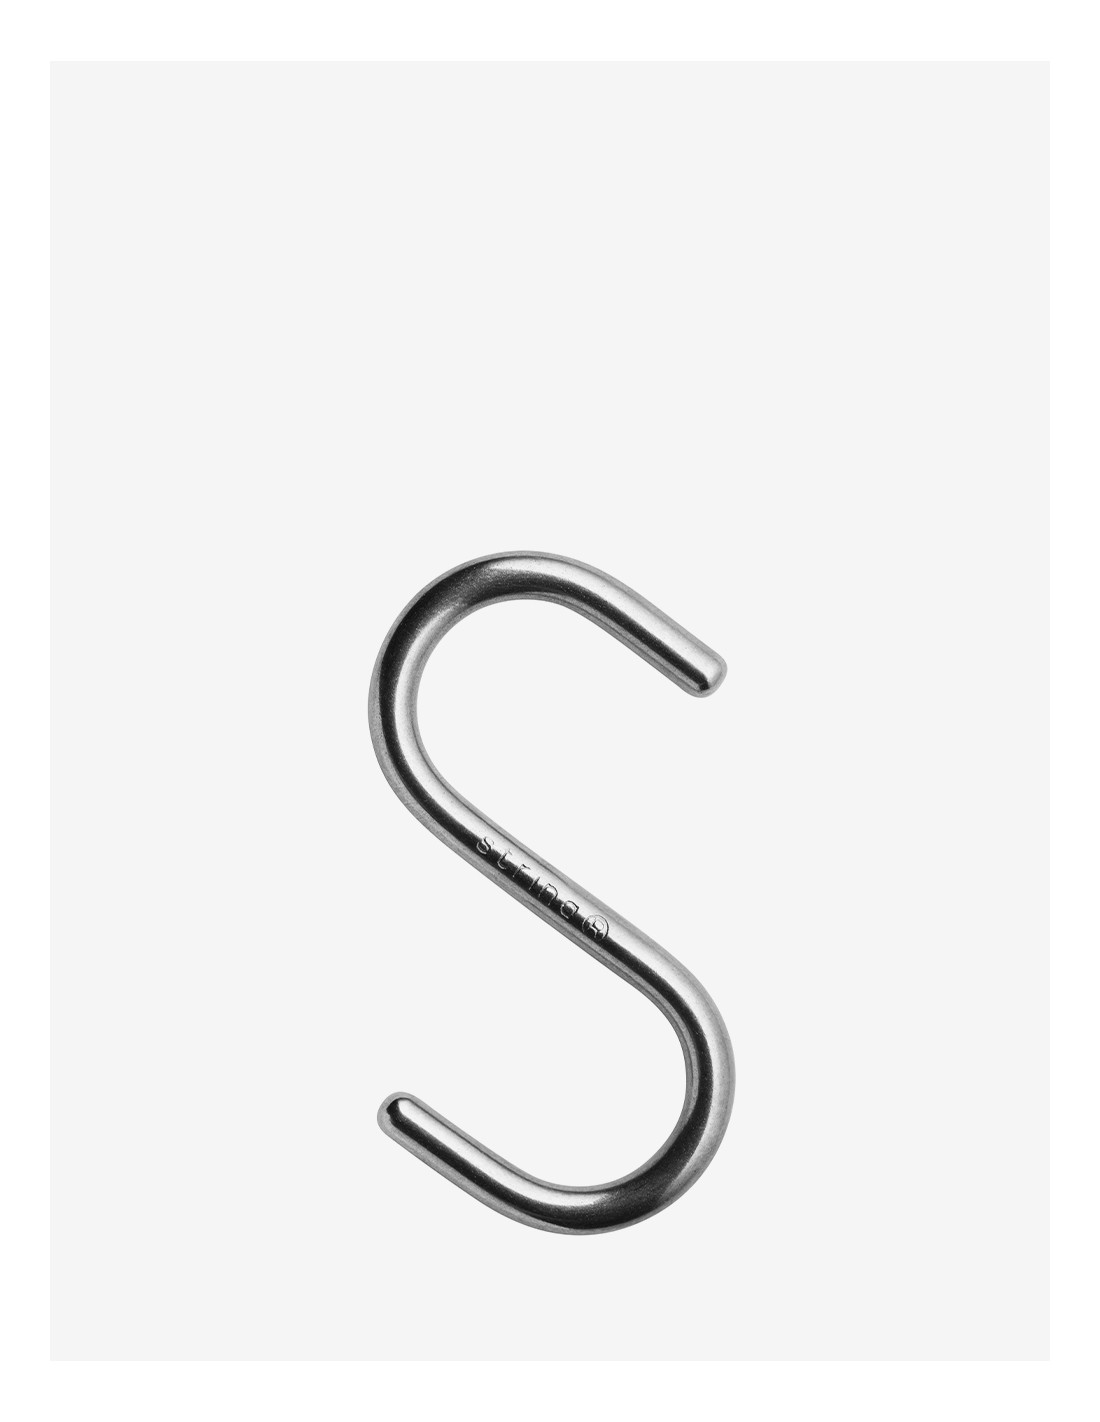 Hook String System - String Hooks - Buy String System Online